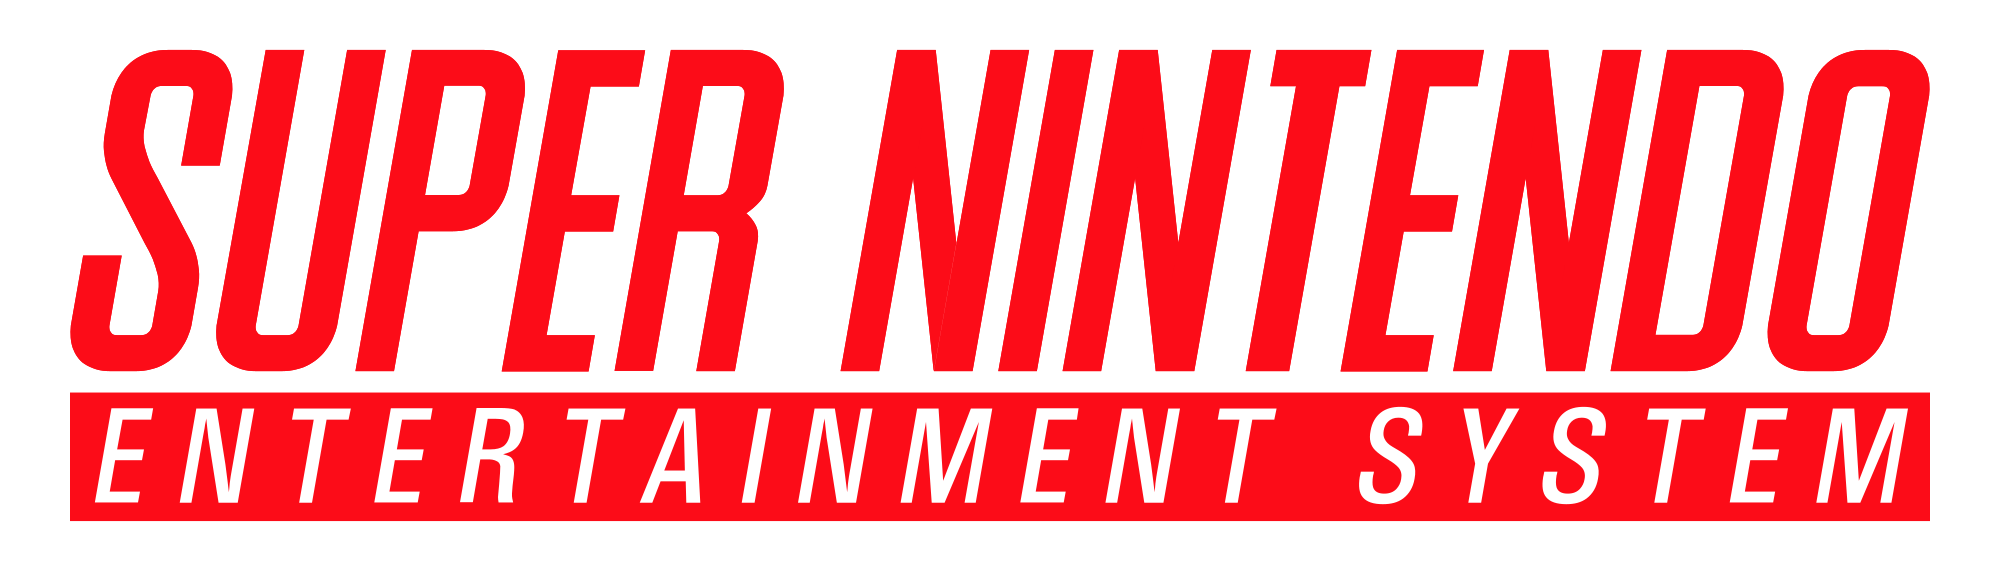 SNES Logo - Super Nintendo Entertainment System logo.svg